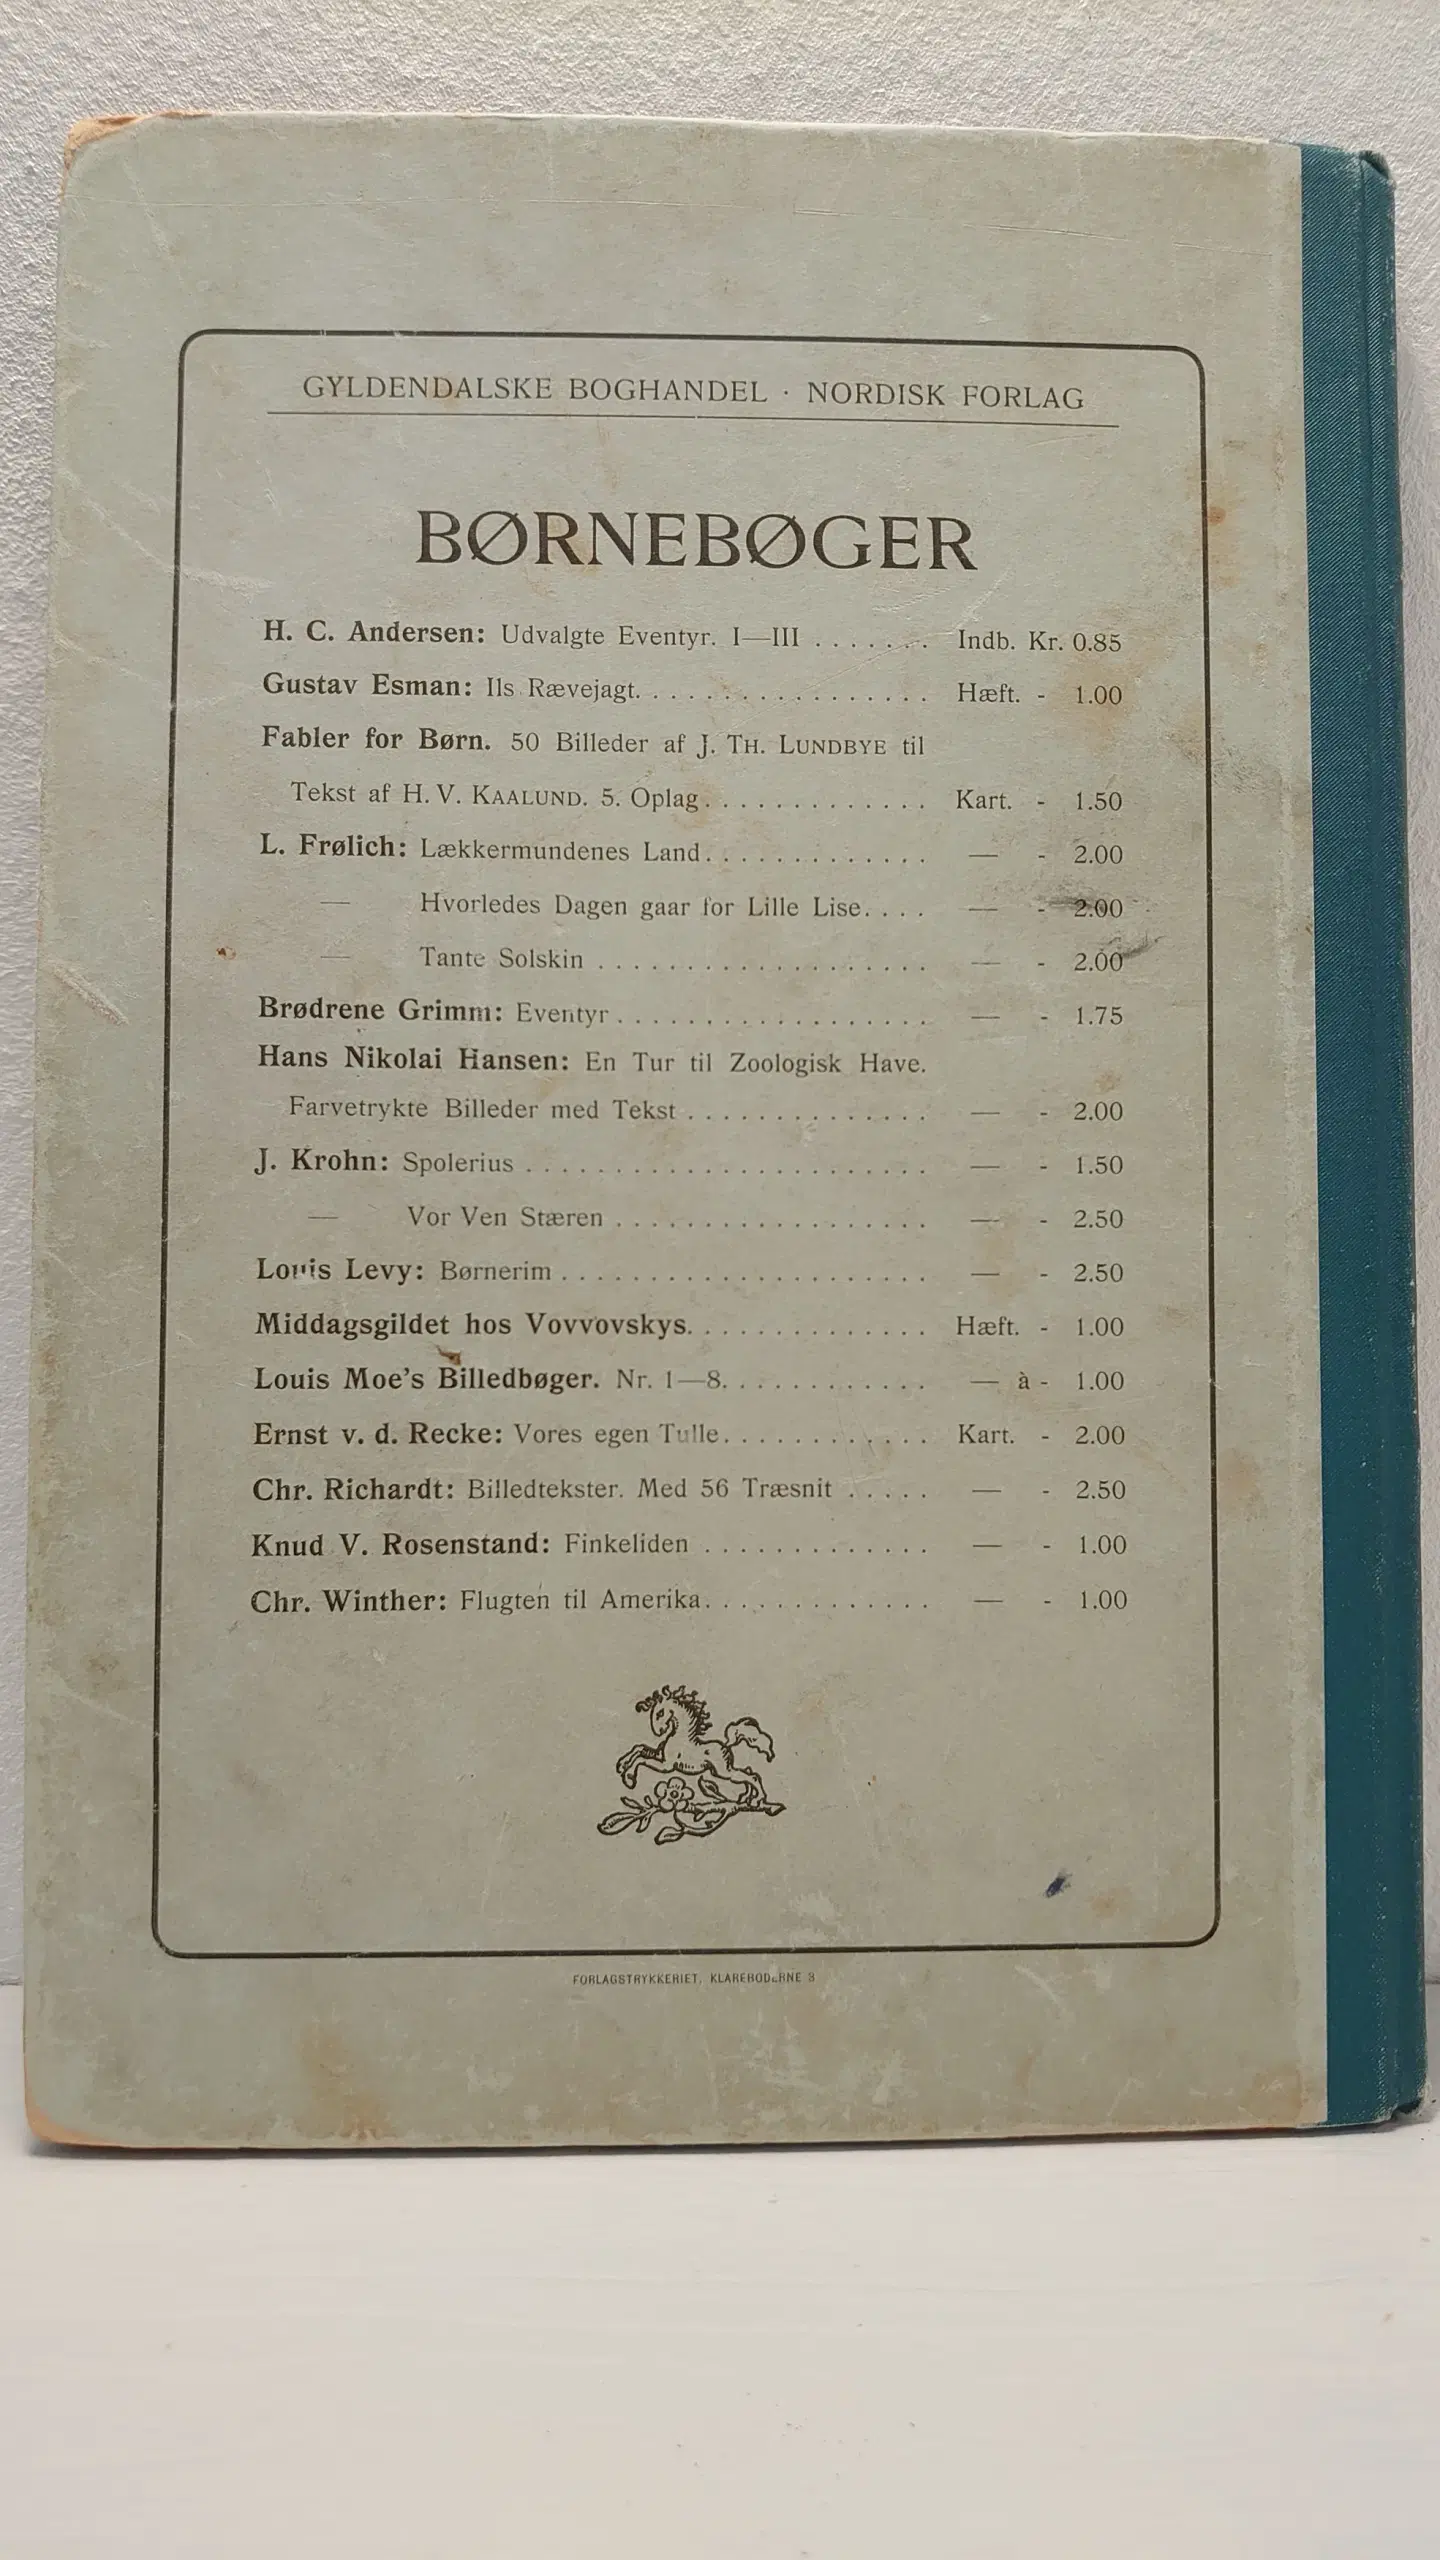 Chr Winther: Fabler for Børn 2 samling 1905